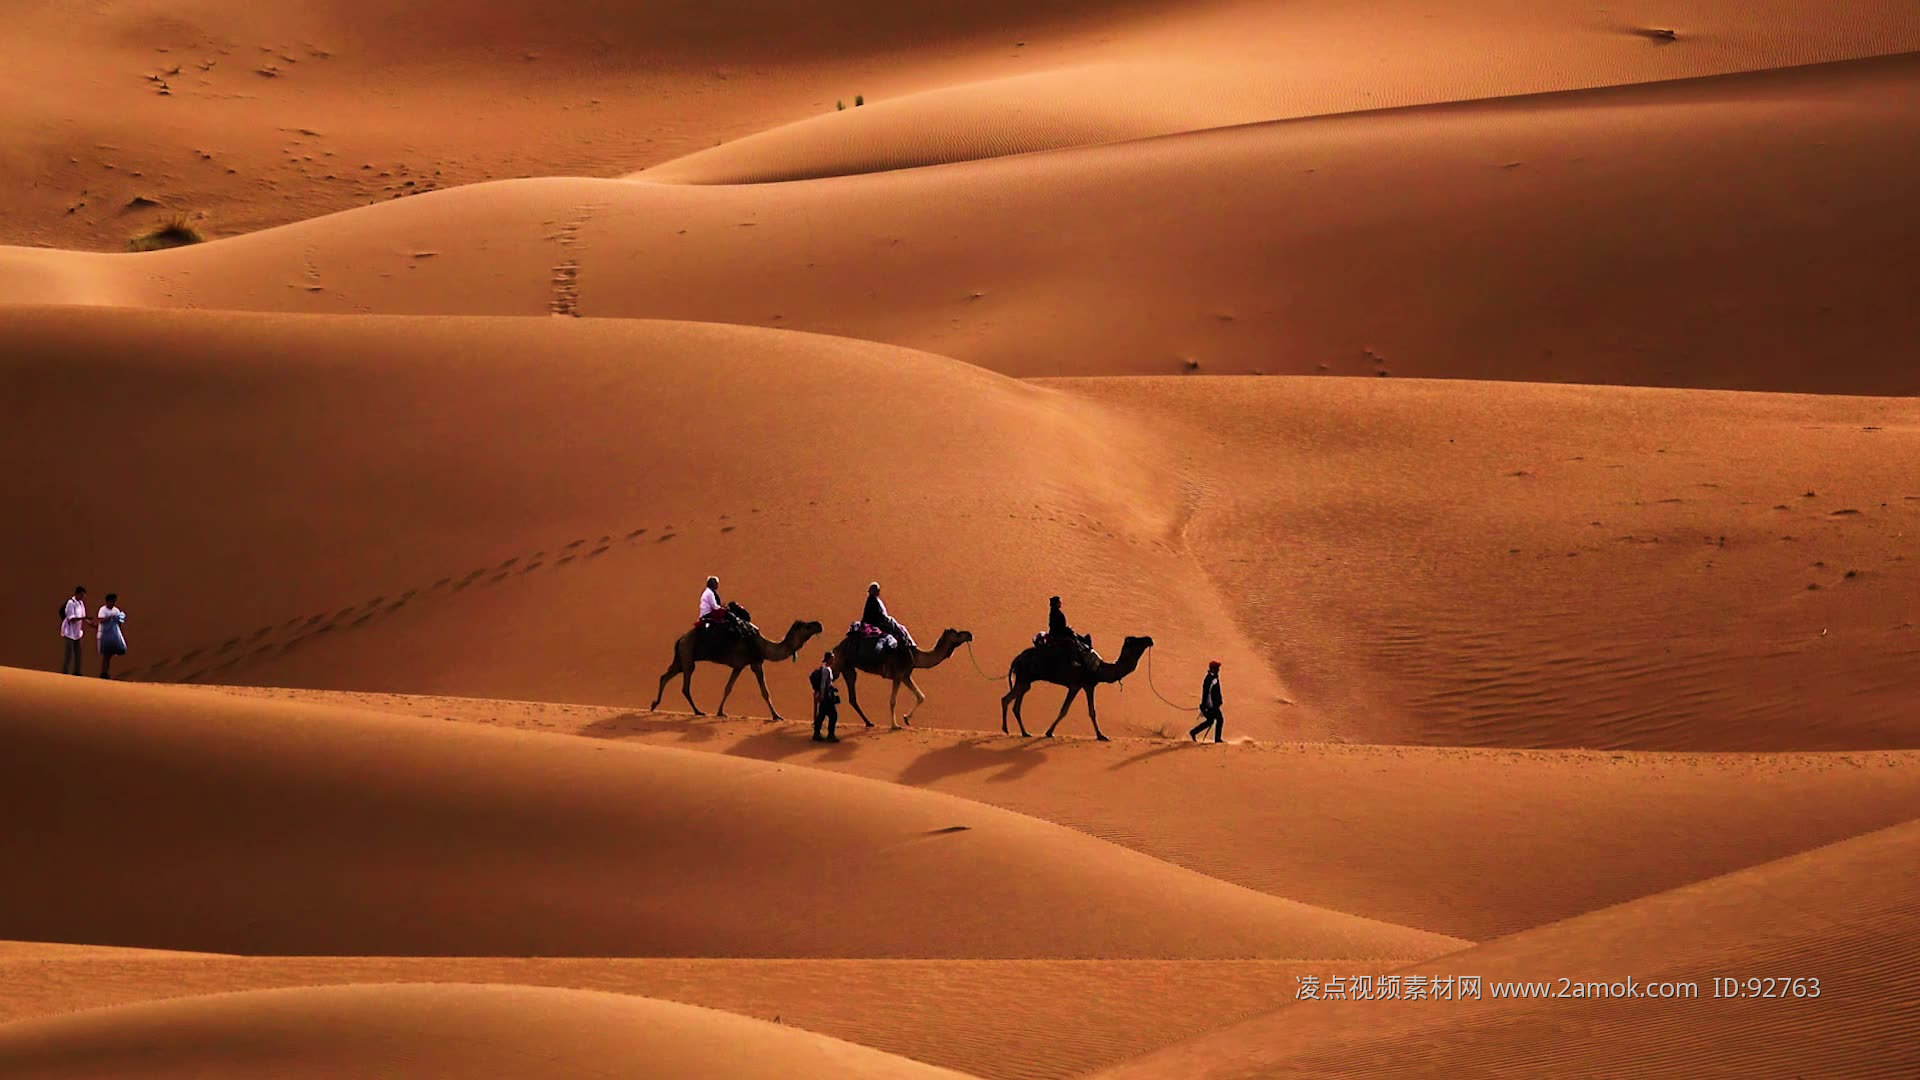 黄昏沙漠骆驼图片_自然风景_高清素材_图行天下图库